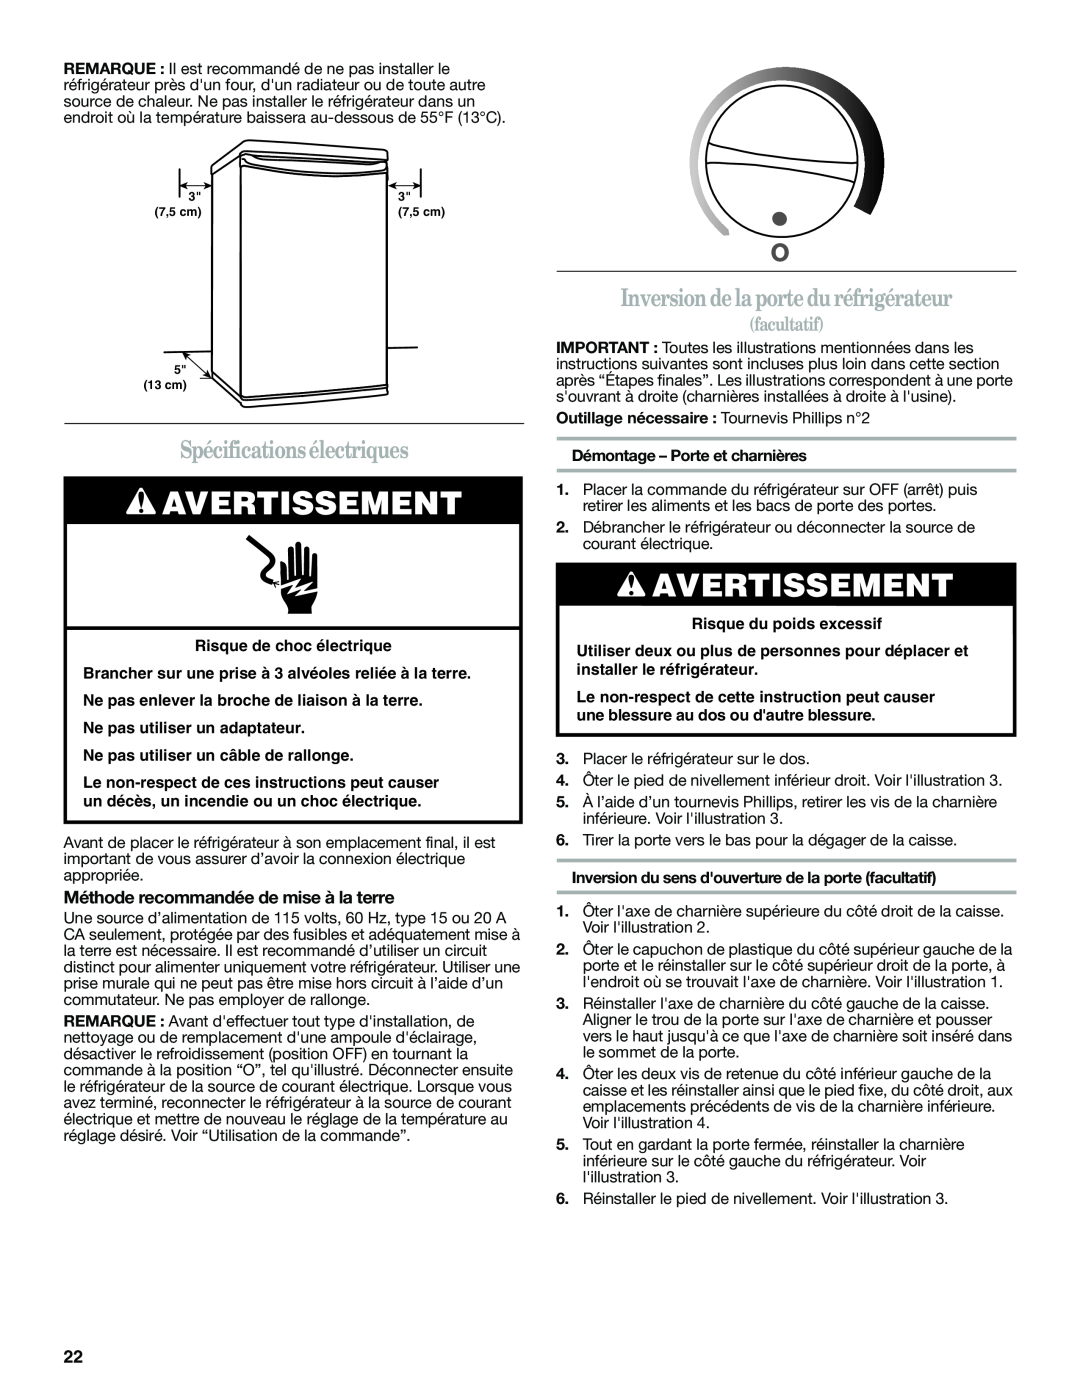 Whirlpool WAR449W manual Spécificationsélectriques, Inversion de la porte duréfrigérateur, facultatif, Avertissement 